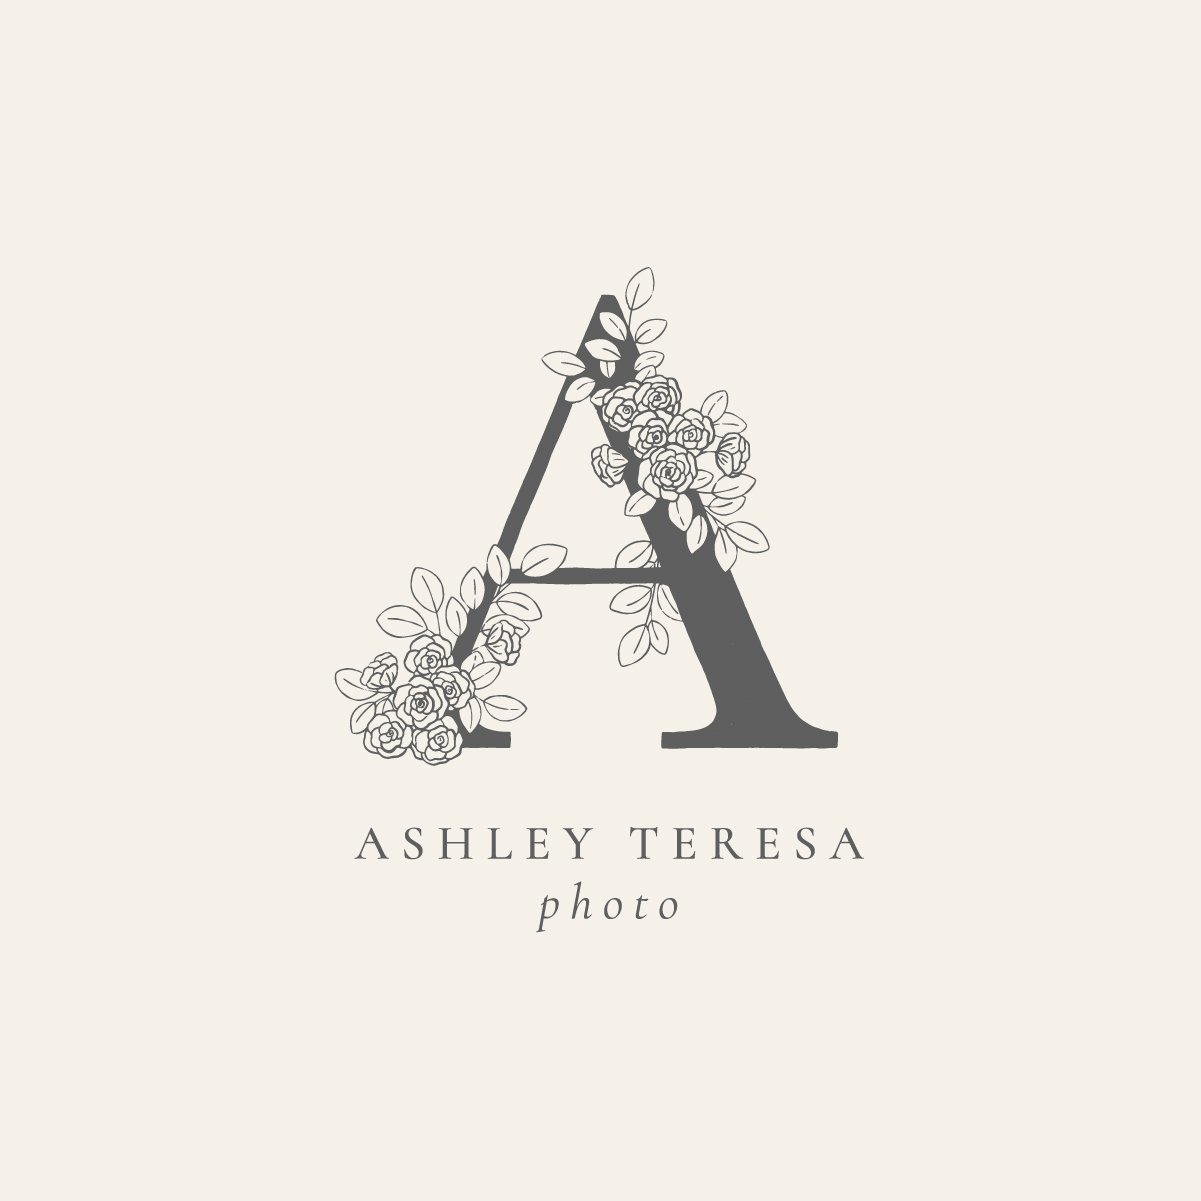 Ashley Teresa Photo Social 12.jpg